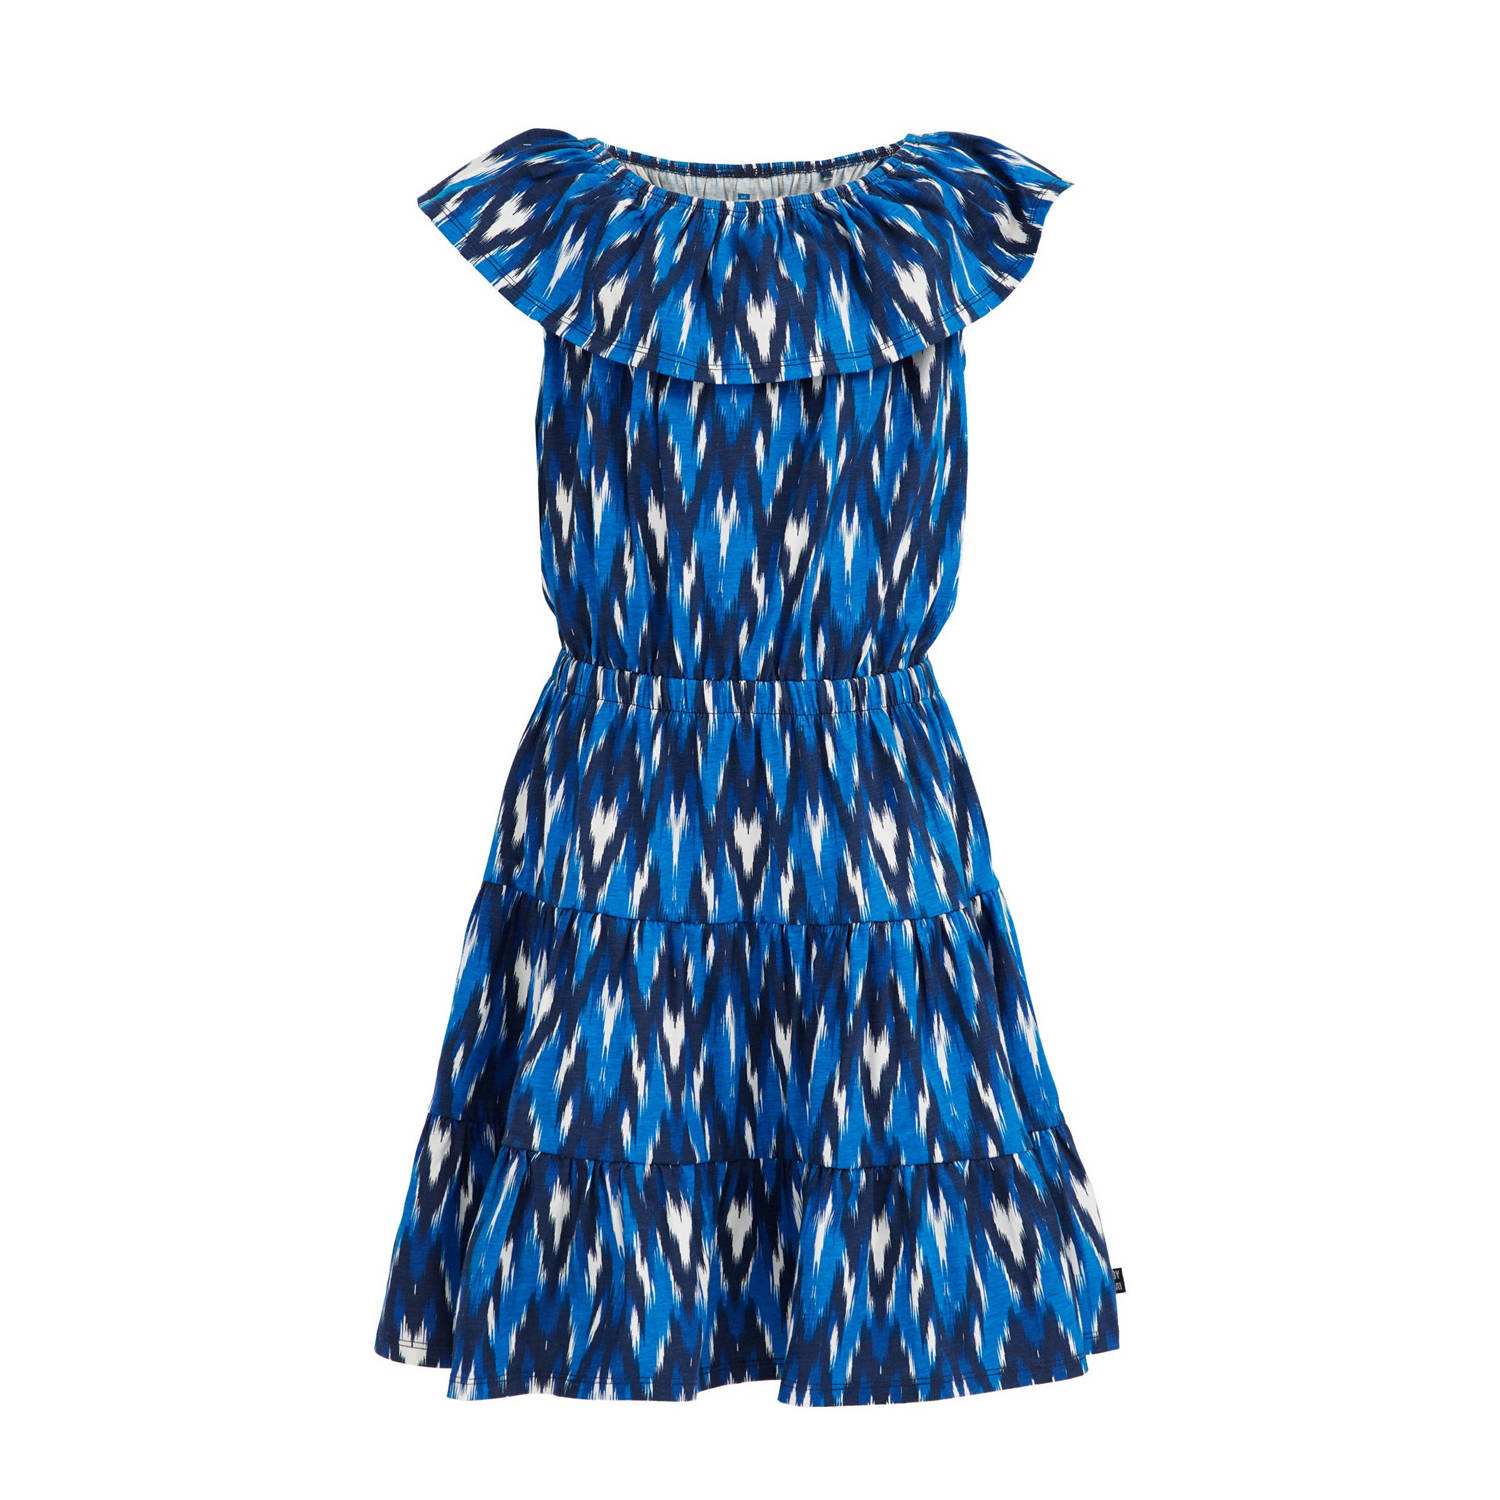 WE Fashion jurk met all over print blauw Meisjes Stretchkatoen Ronde hals 146 152